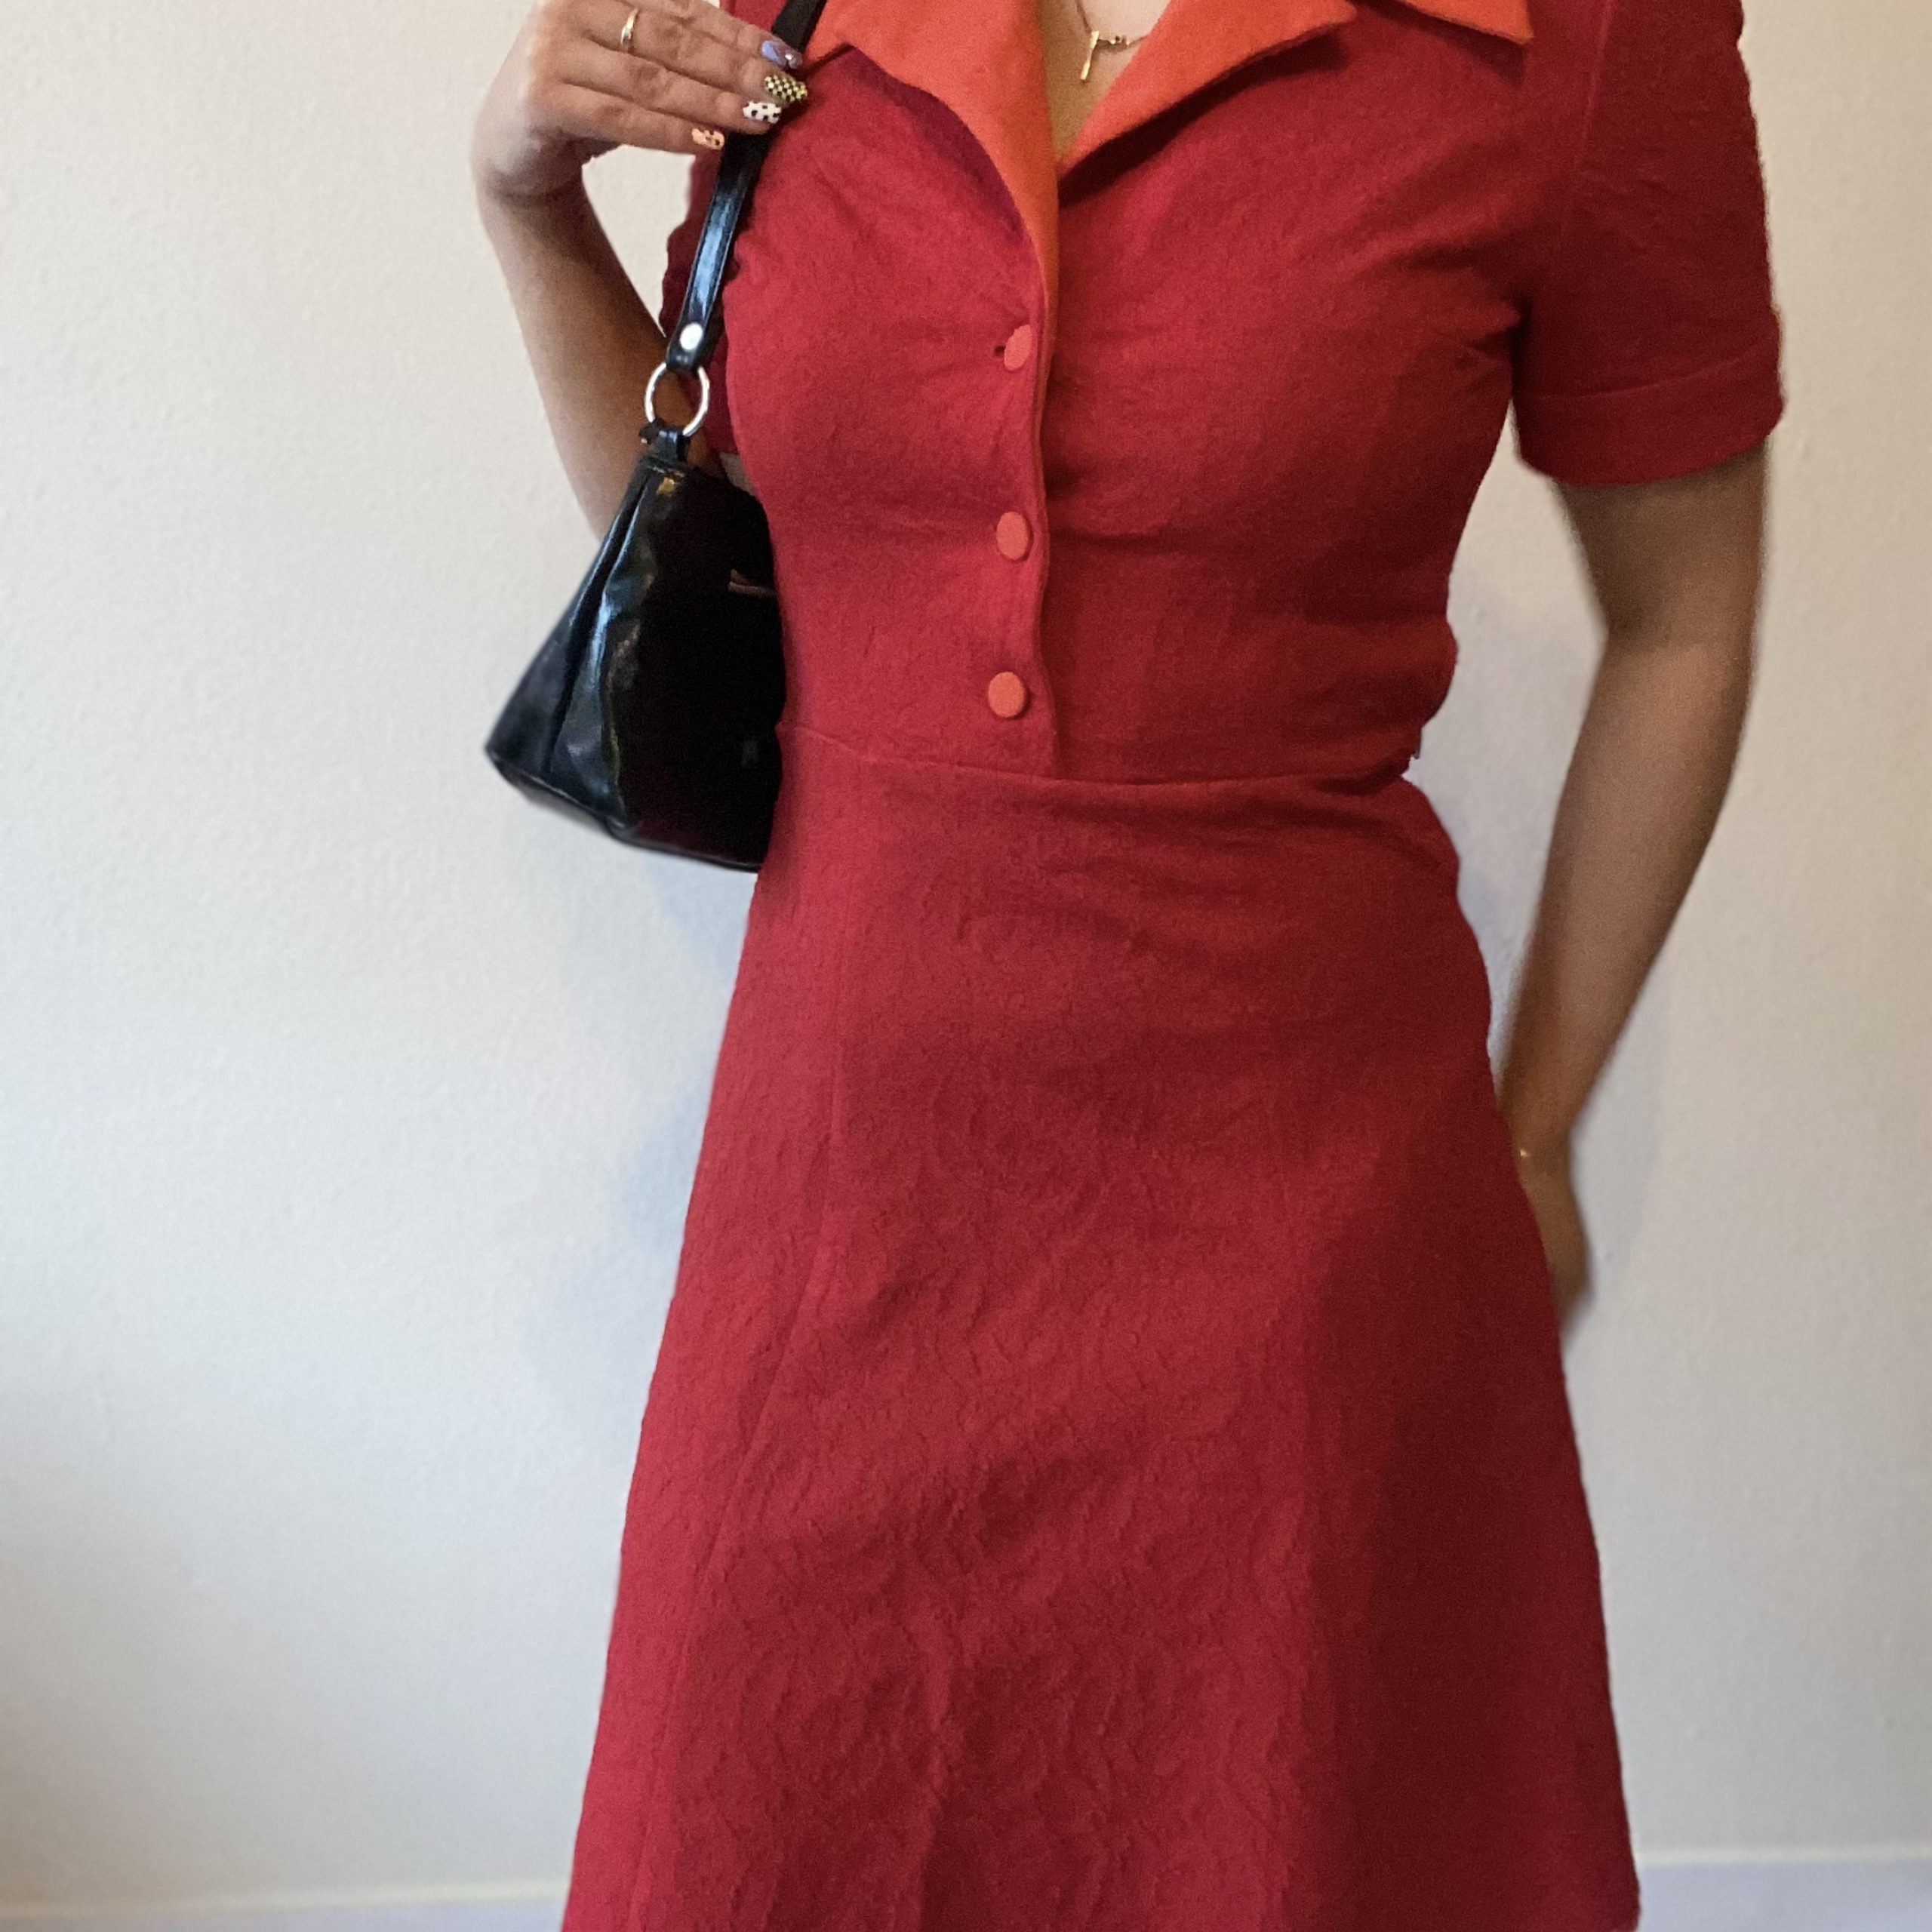 zien enthousiast inflatie Vintage wollen jurk uit de jaren 50 - Vintageconnector